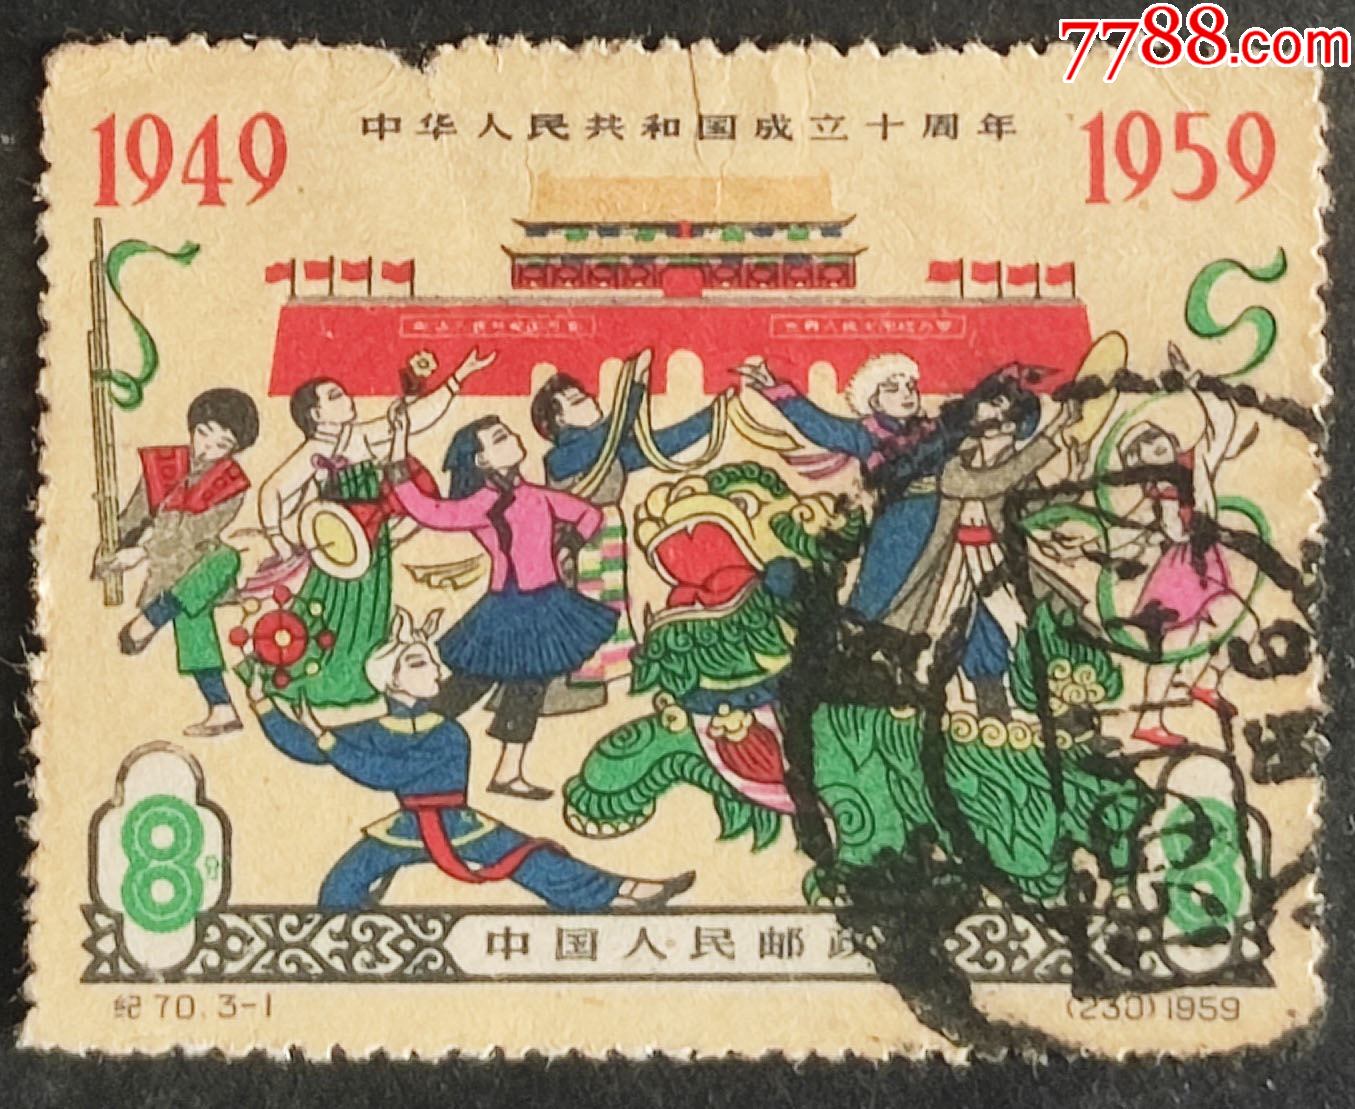 1980年的《庚申年》邮票 - 中国邮政邮票博物馆